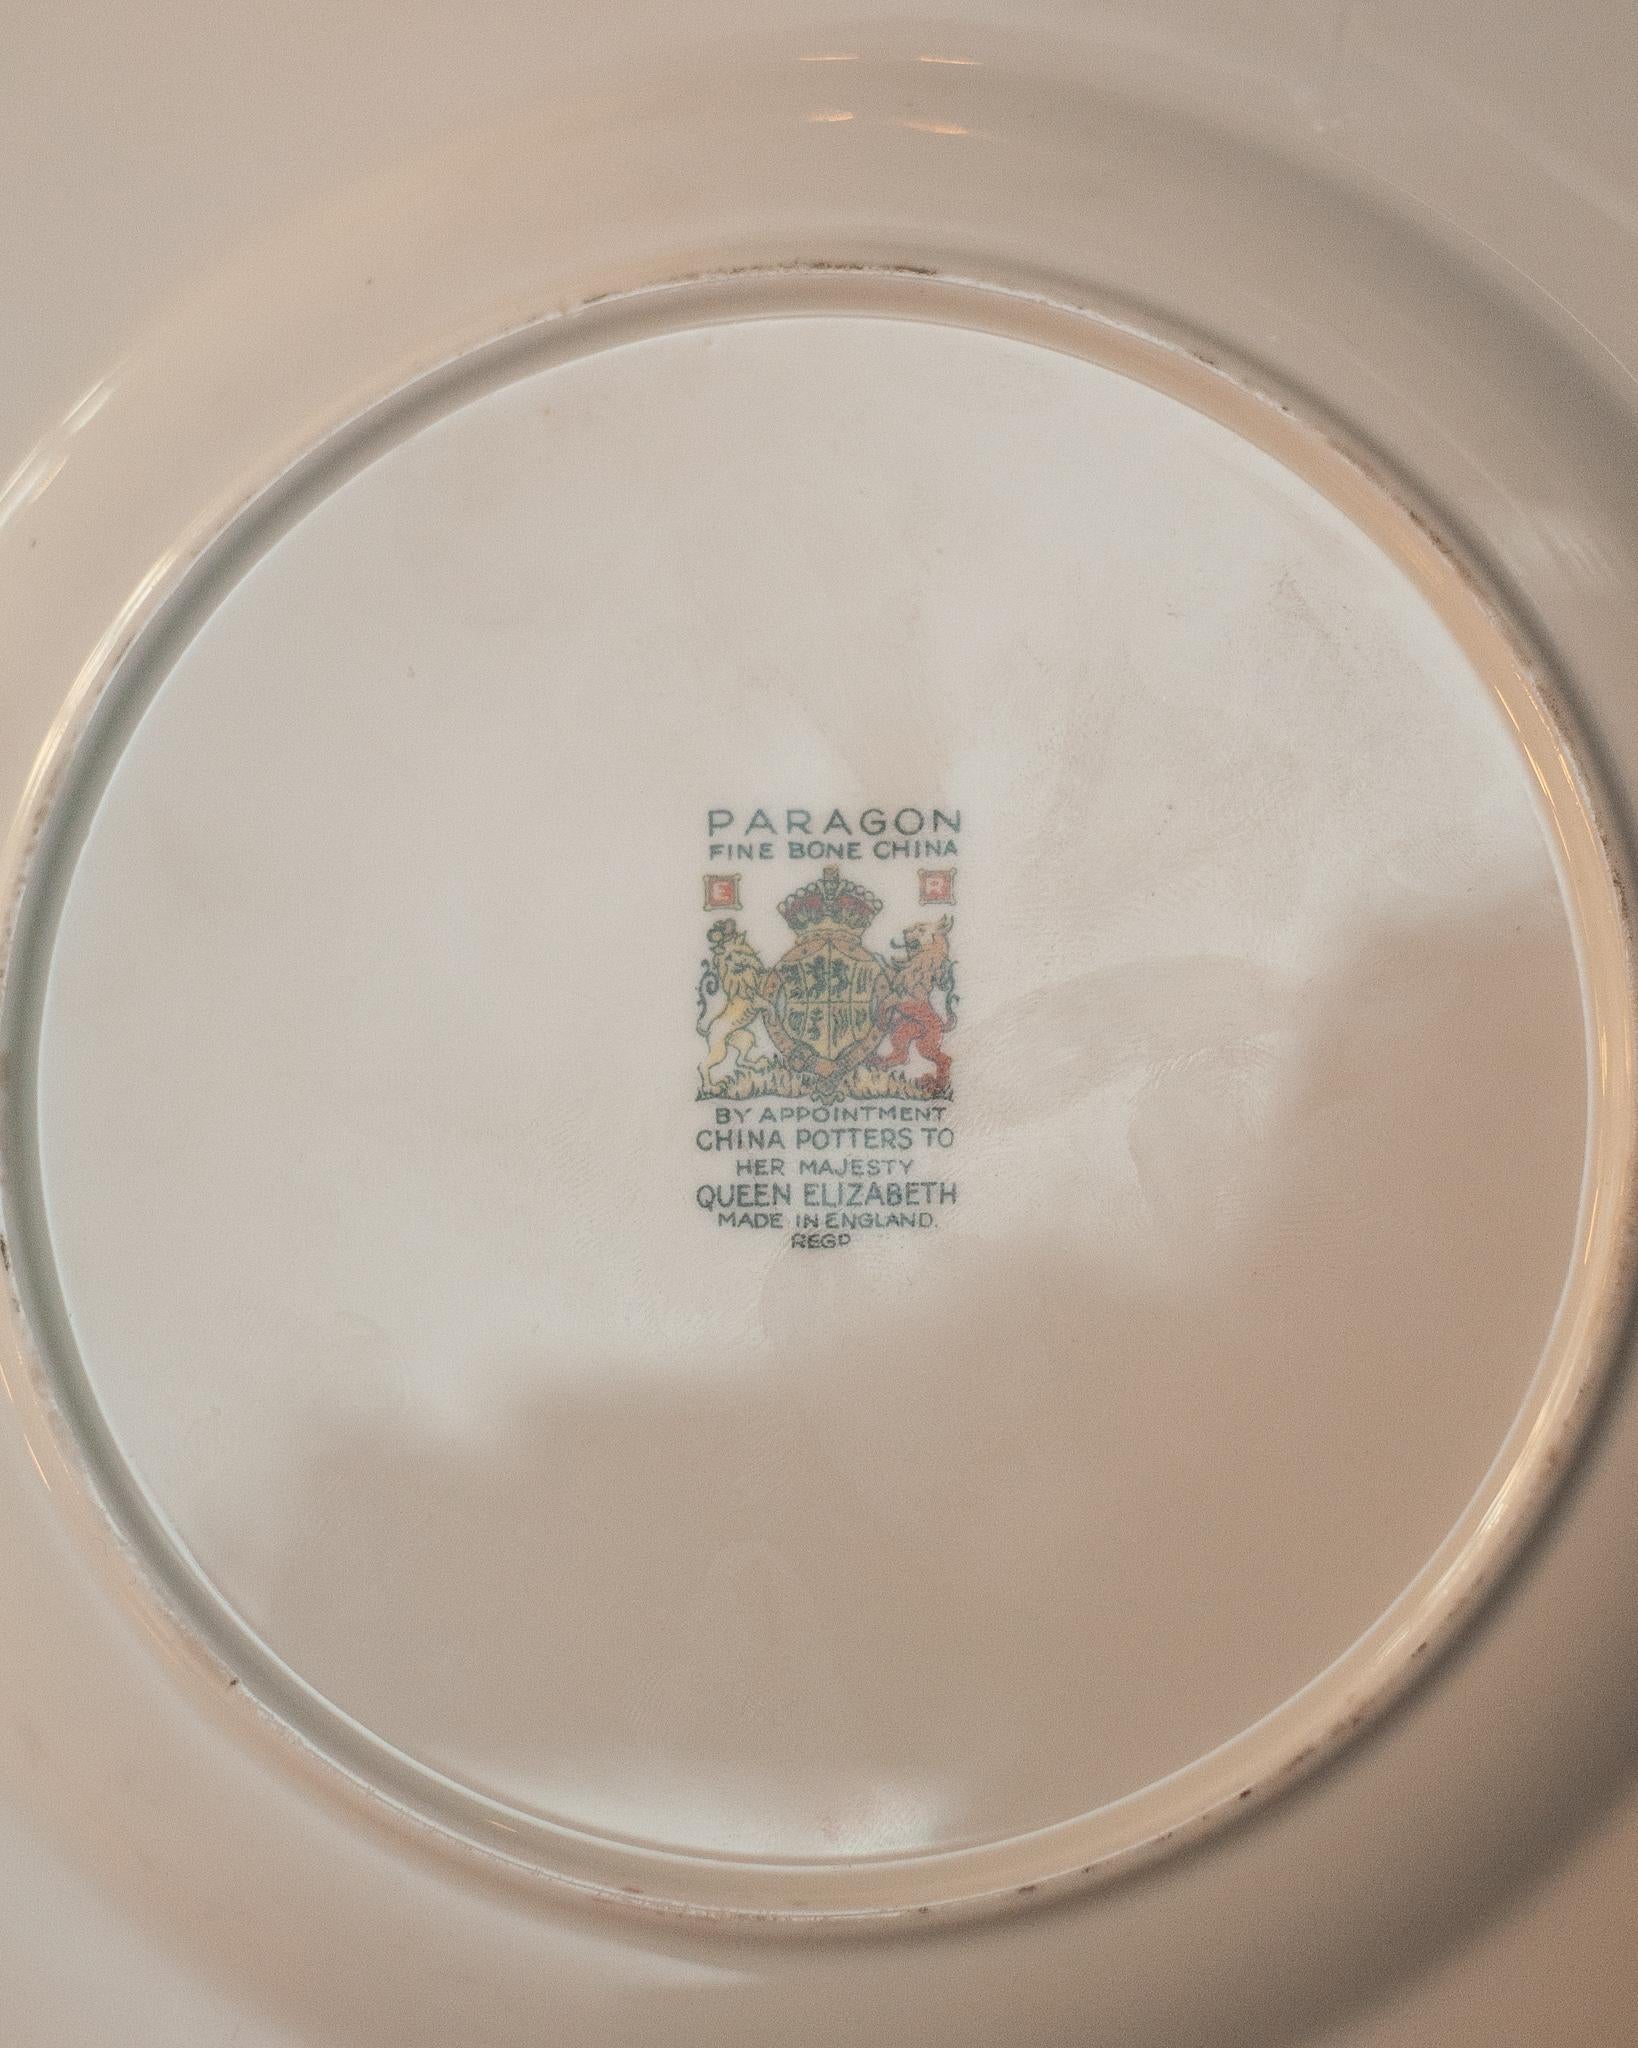 antique dessert plates